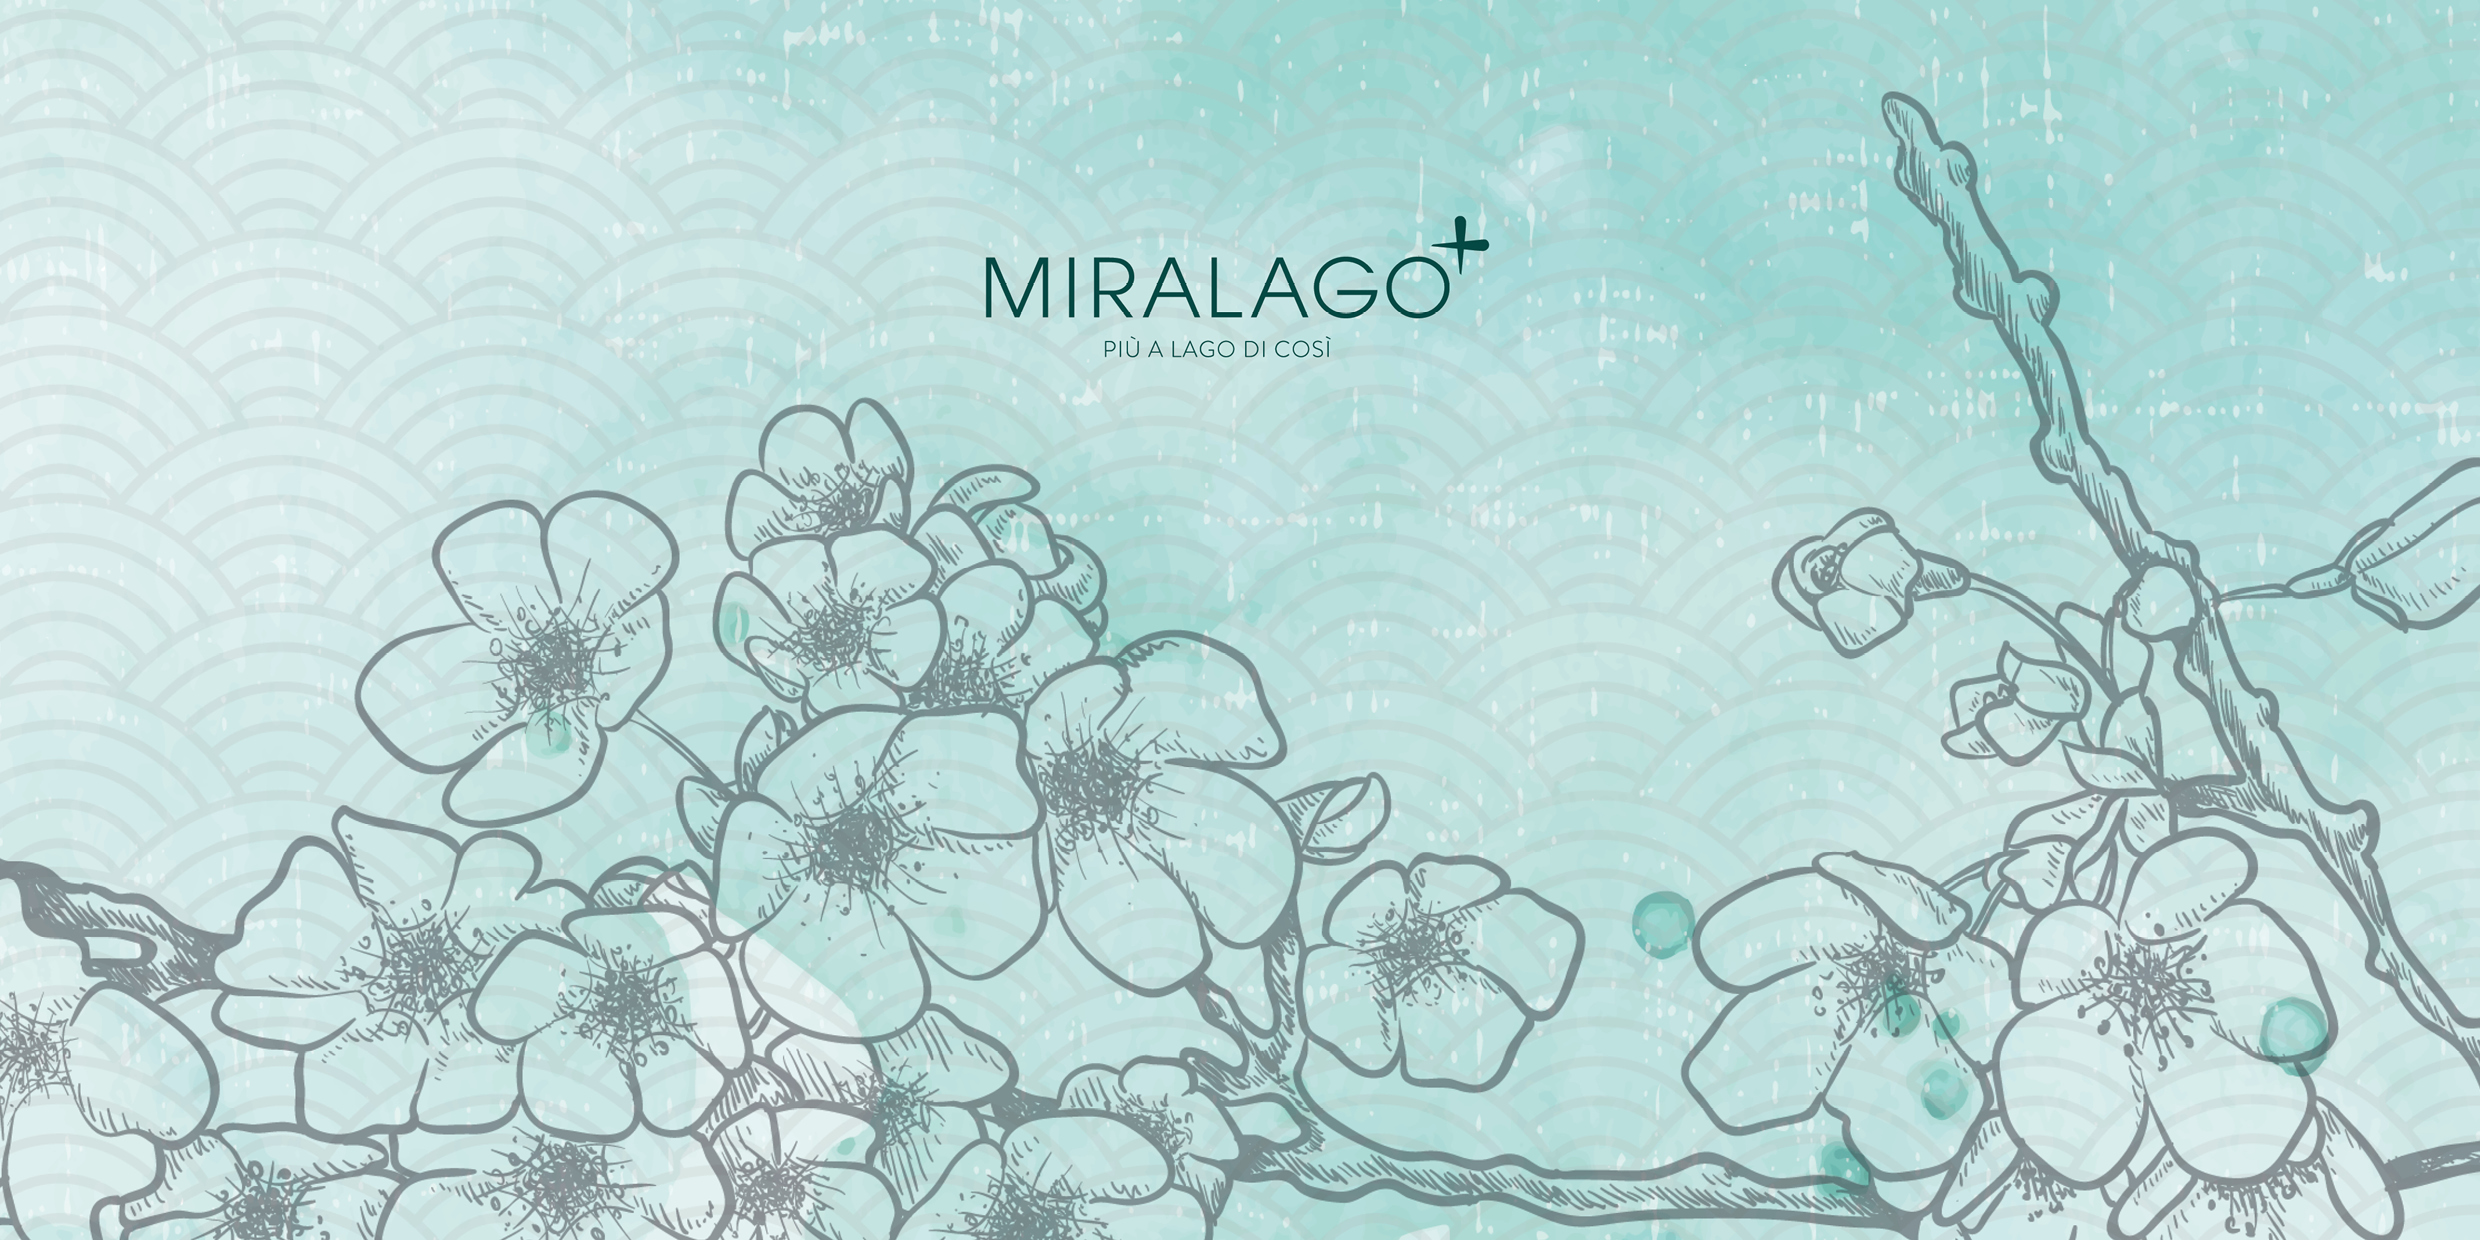 Miralago | FUSION EXPERIENCE _ da Oriente a Occidente